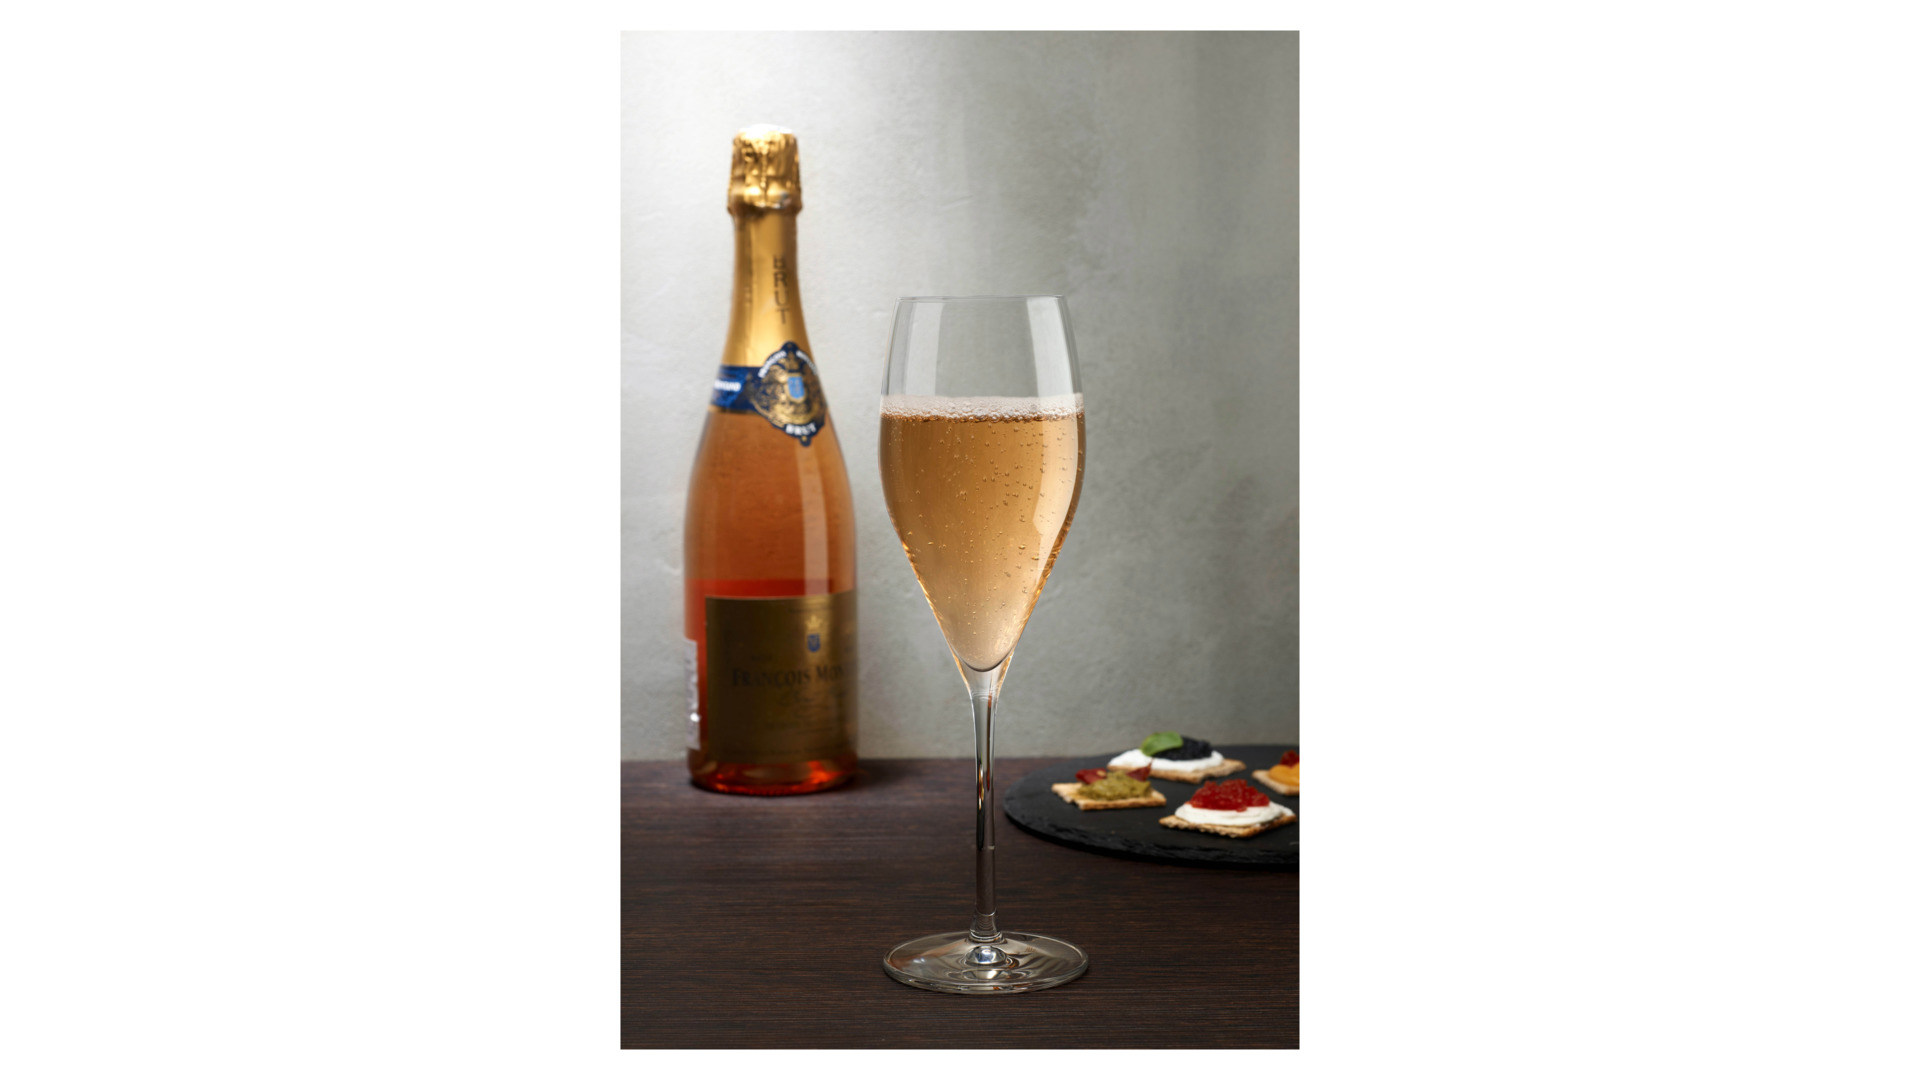 Набор бокалов для шампанского Nude Glass Винтаж 355 мл, 2 шт, хрусталь бессвинцовый